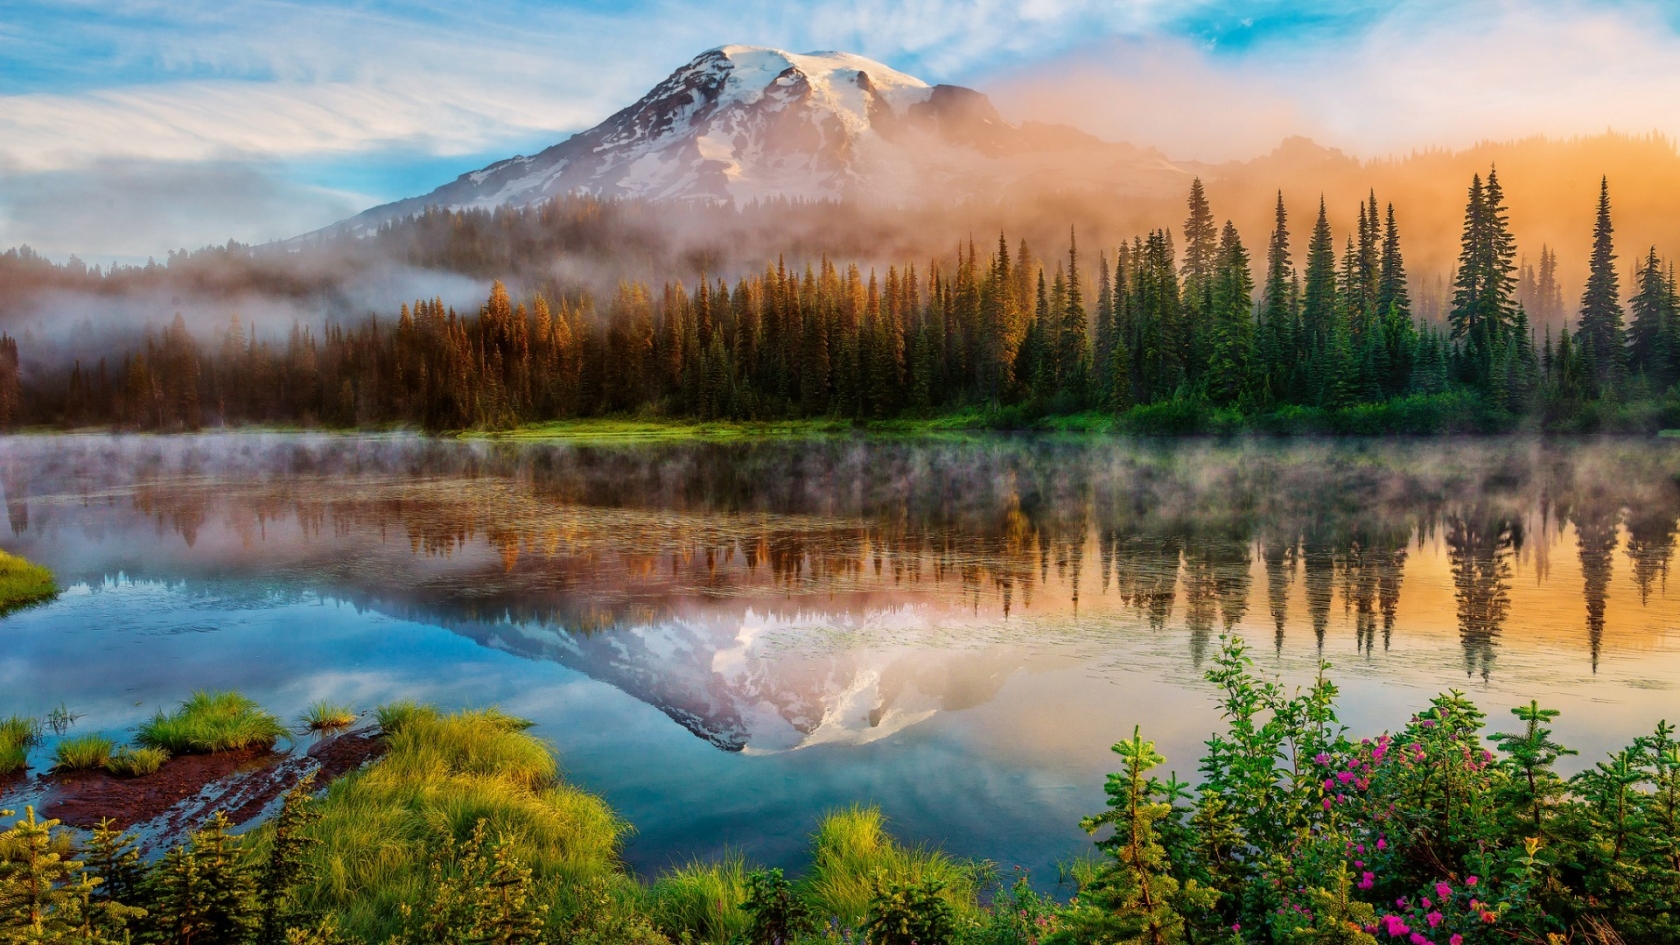 Mount Rainier Landscape for 1680 x 945 HDTV resolution